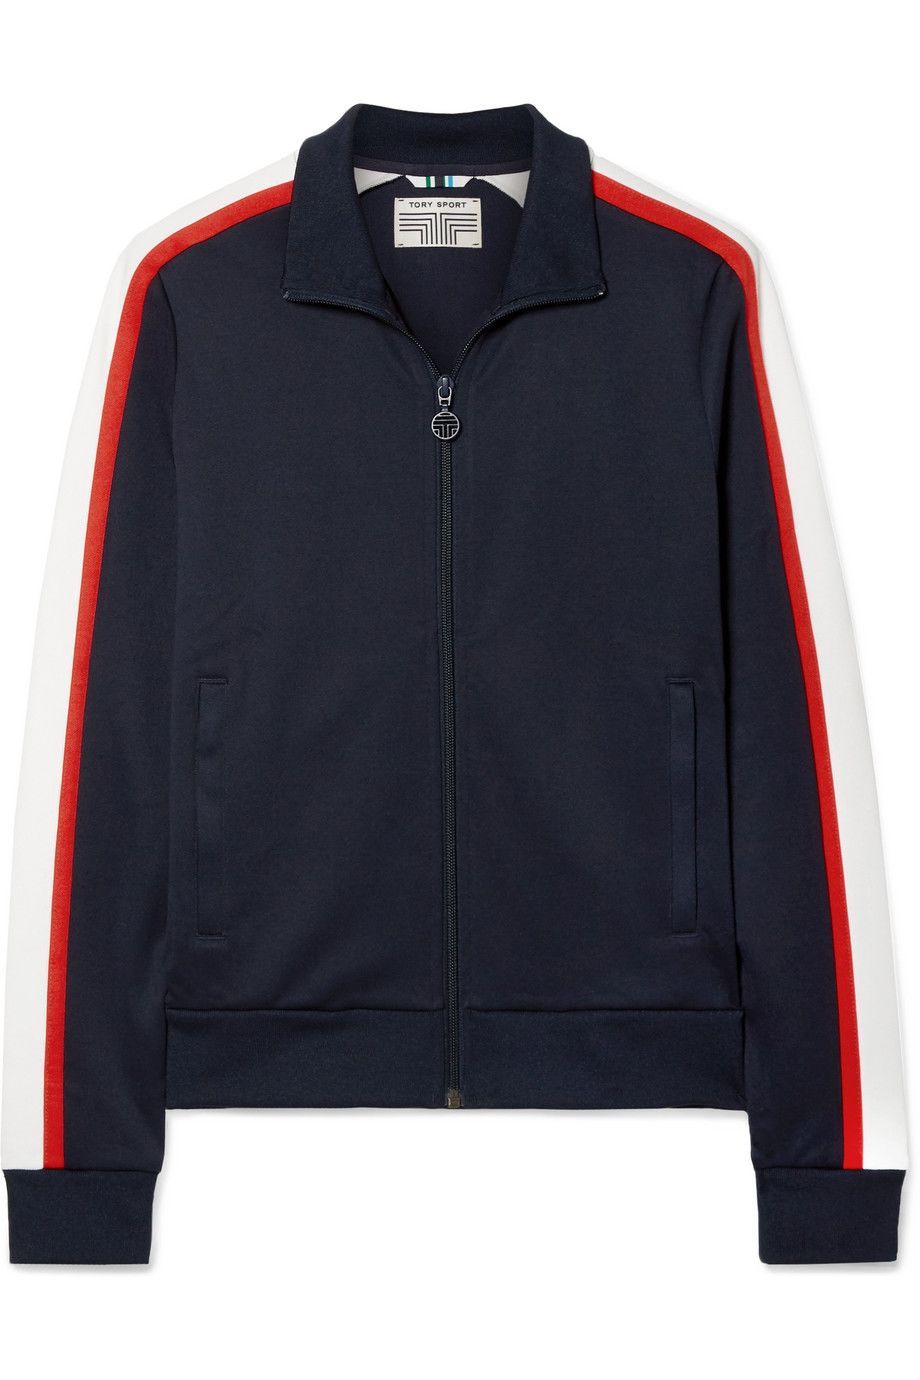 #PopbelaOOTD: Track Jacket yang Fashionable